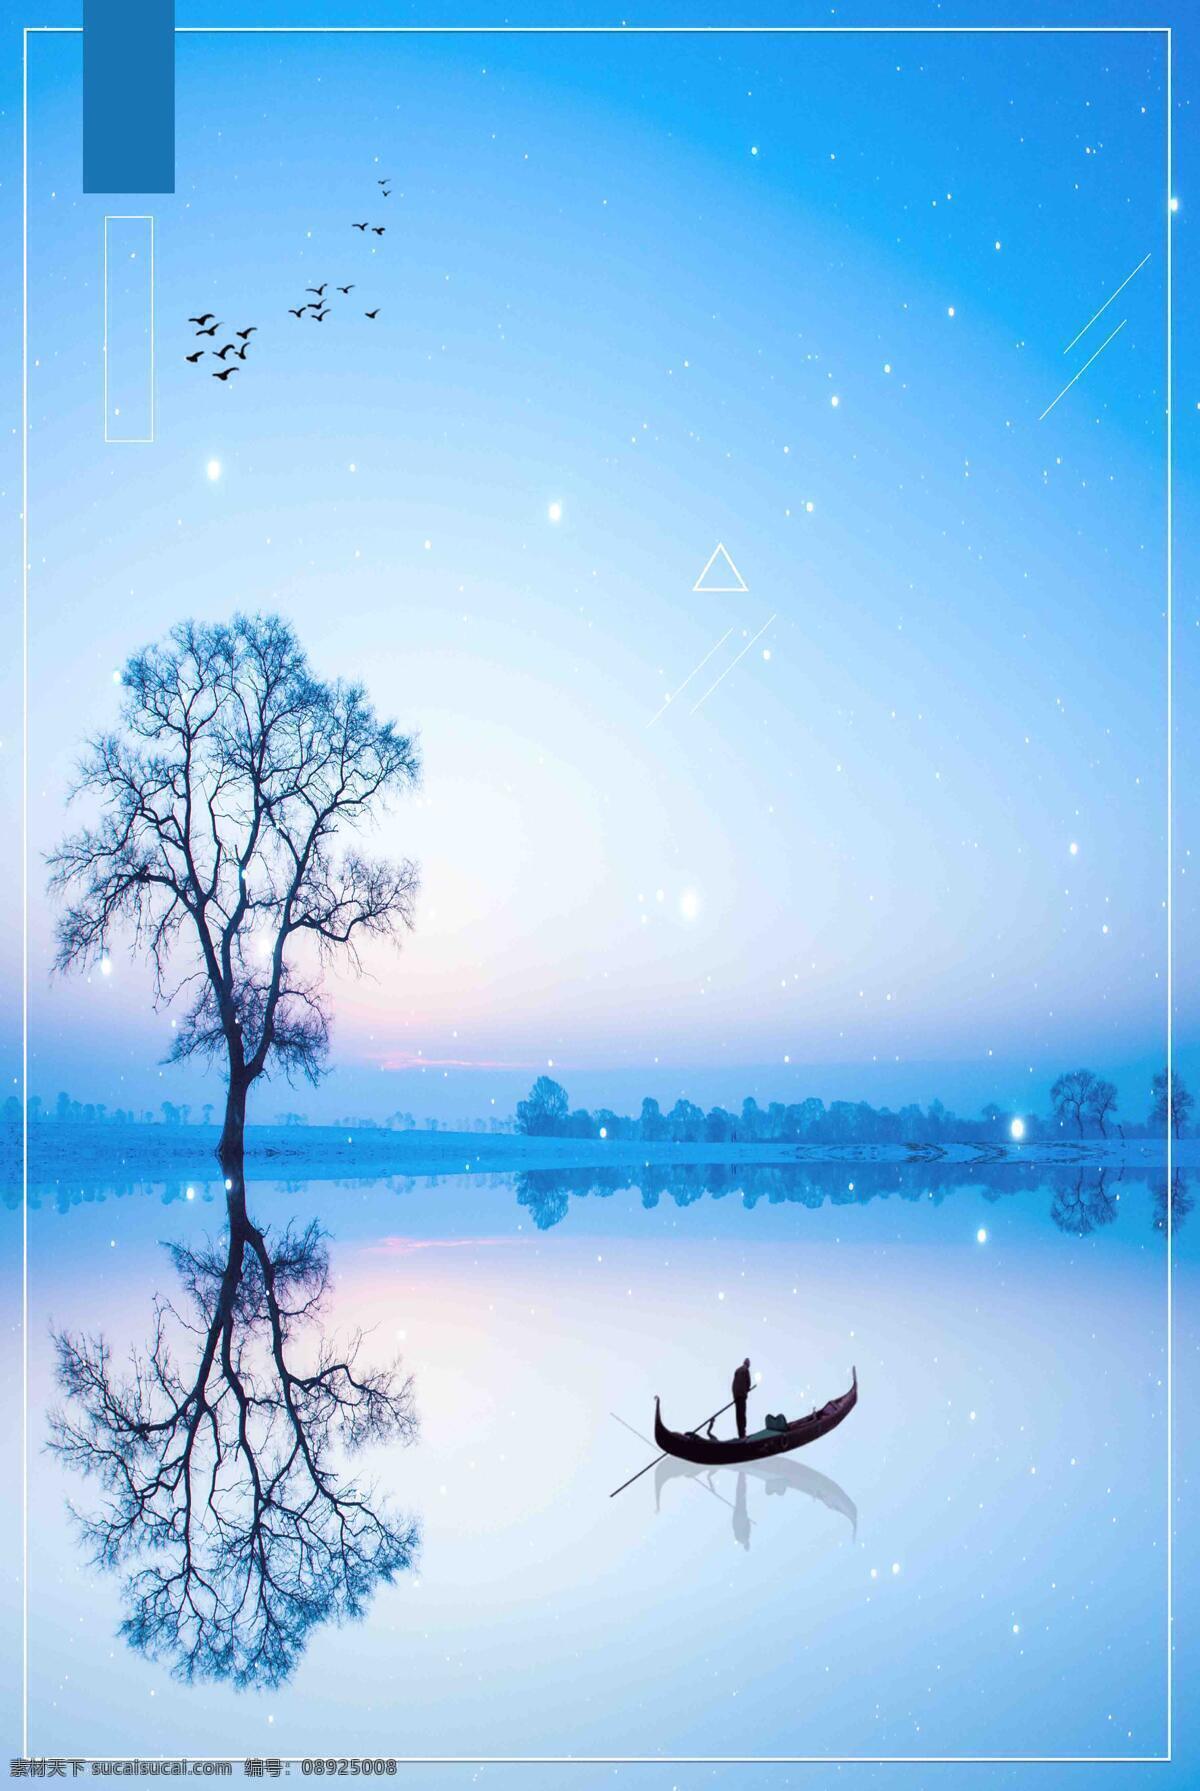 浪漫 蓝色 星空 背景 唯美 渐变 湖泊 泛舟 海报 广告